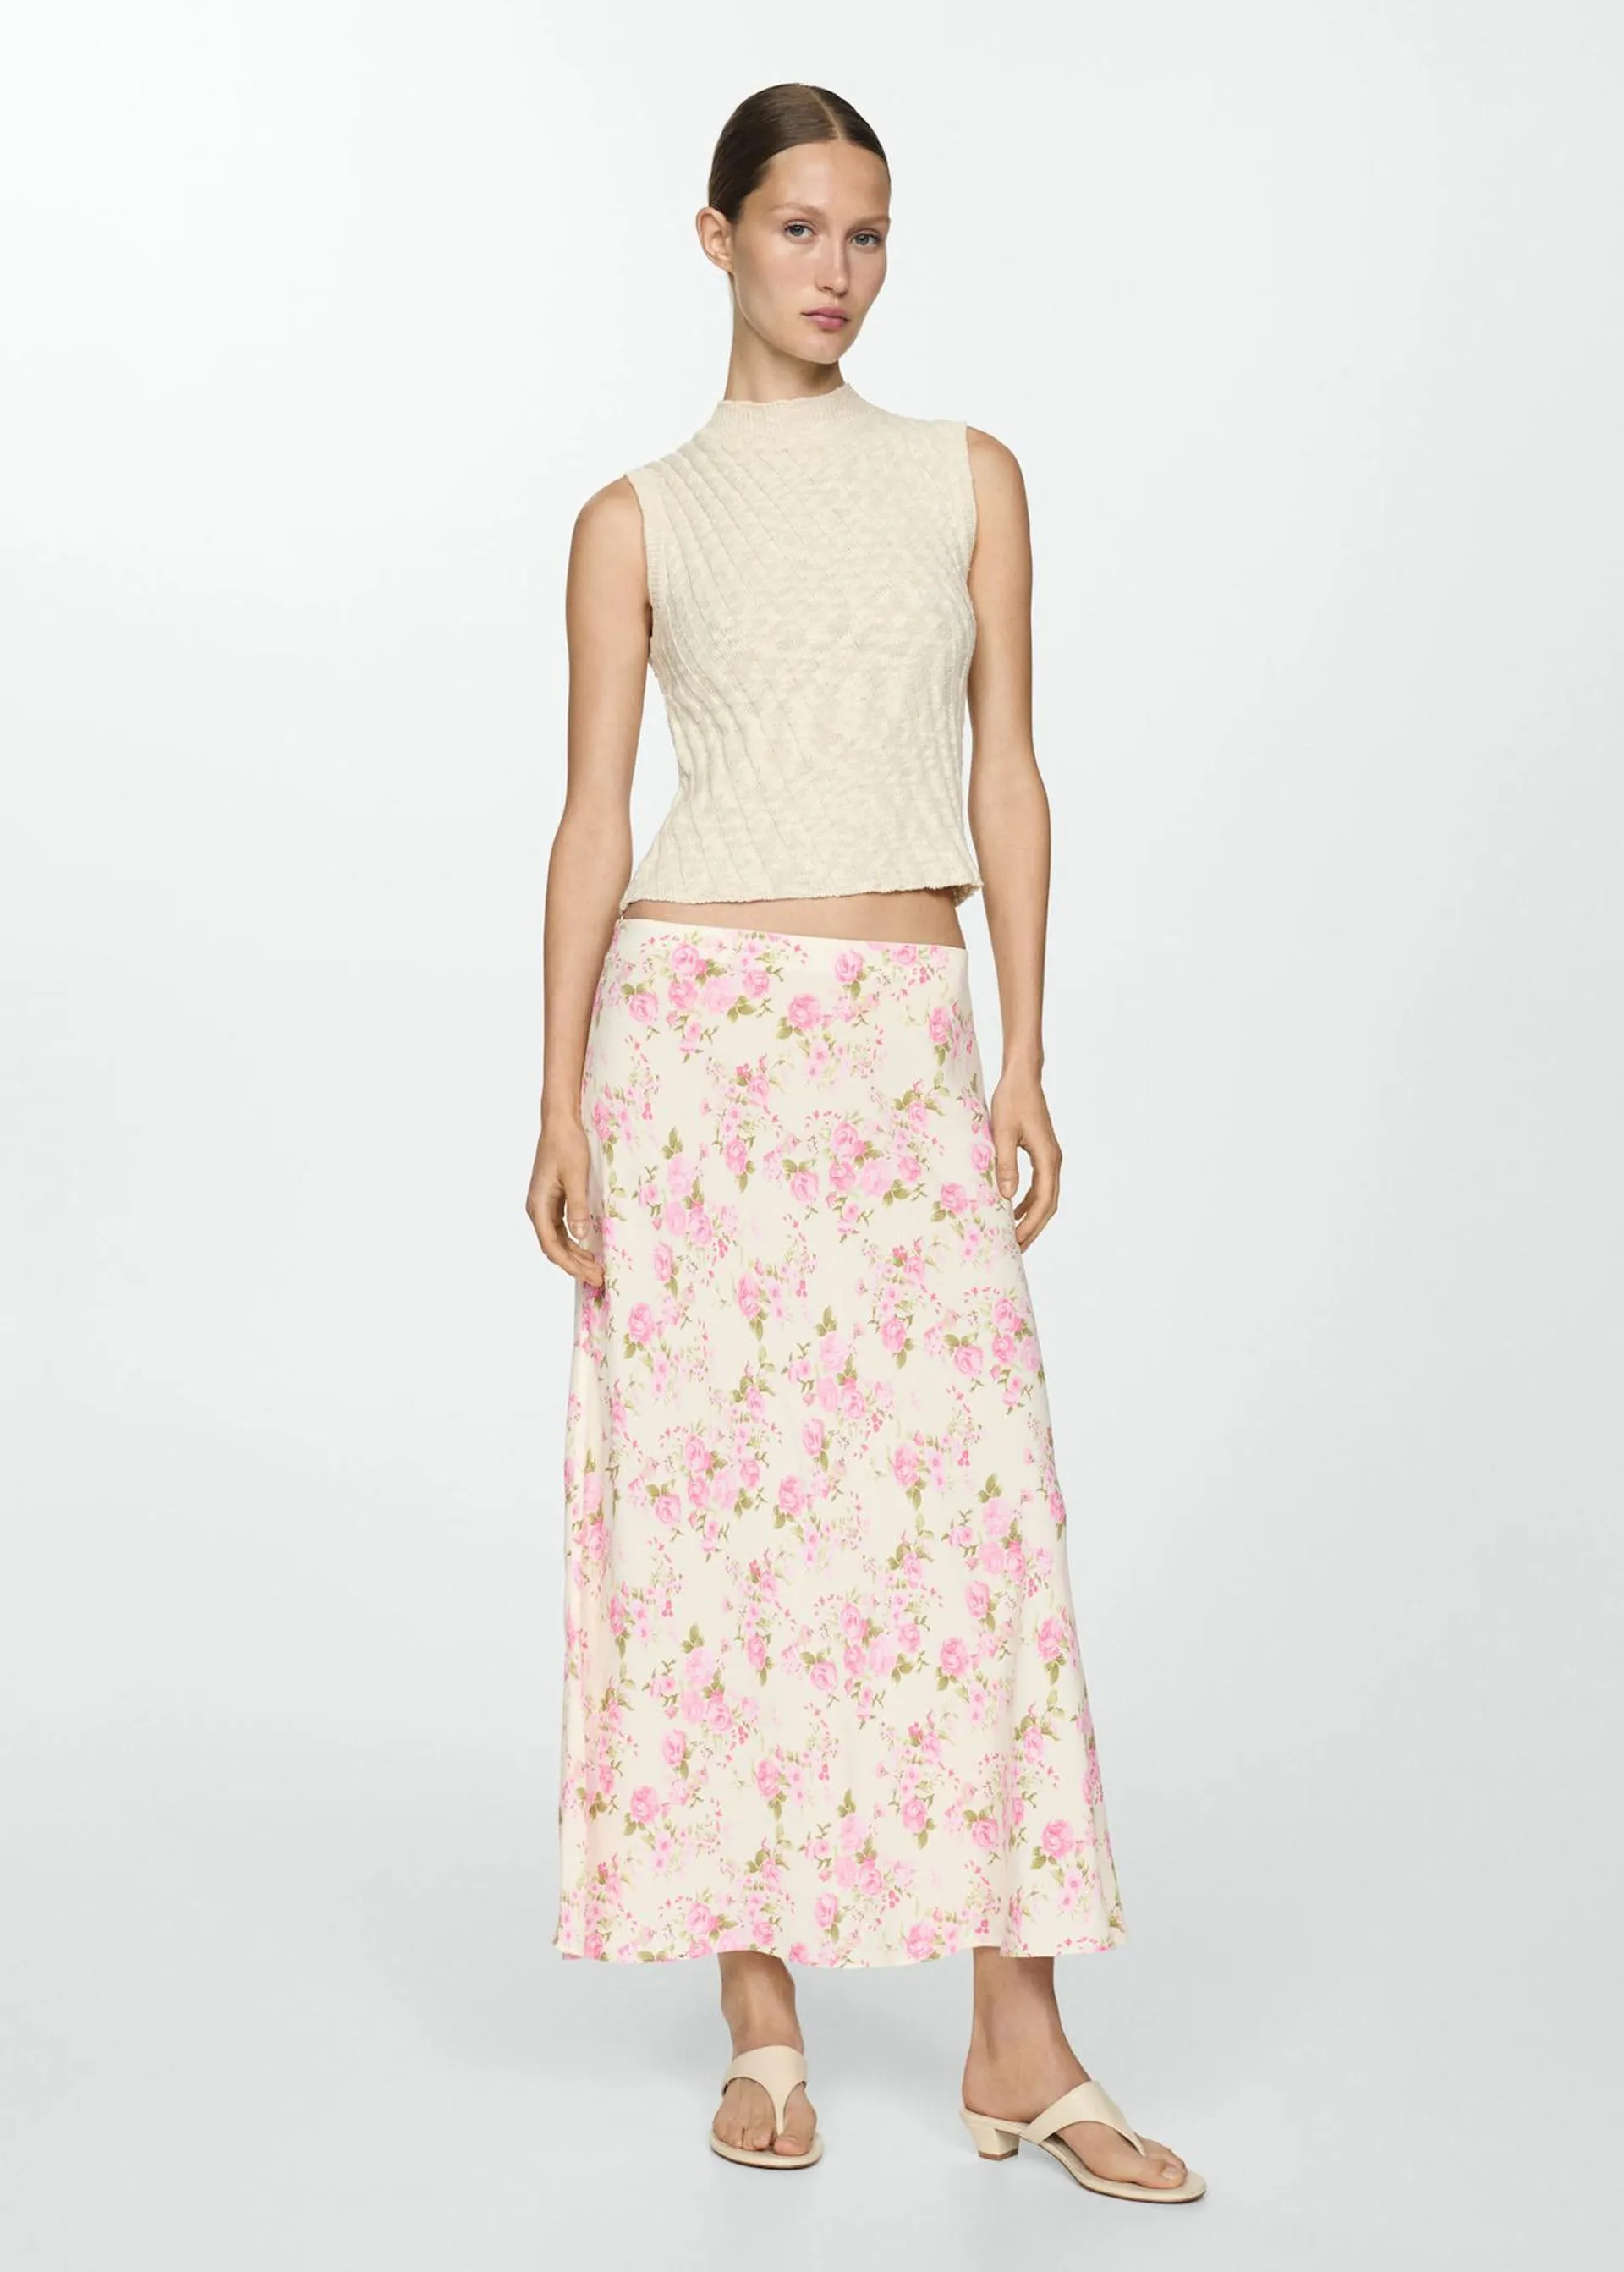 Floral long skirt